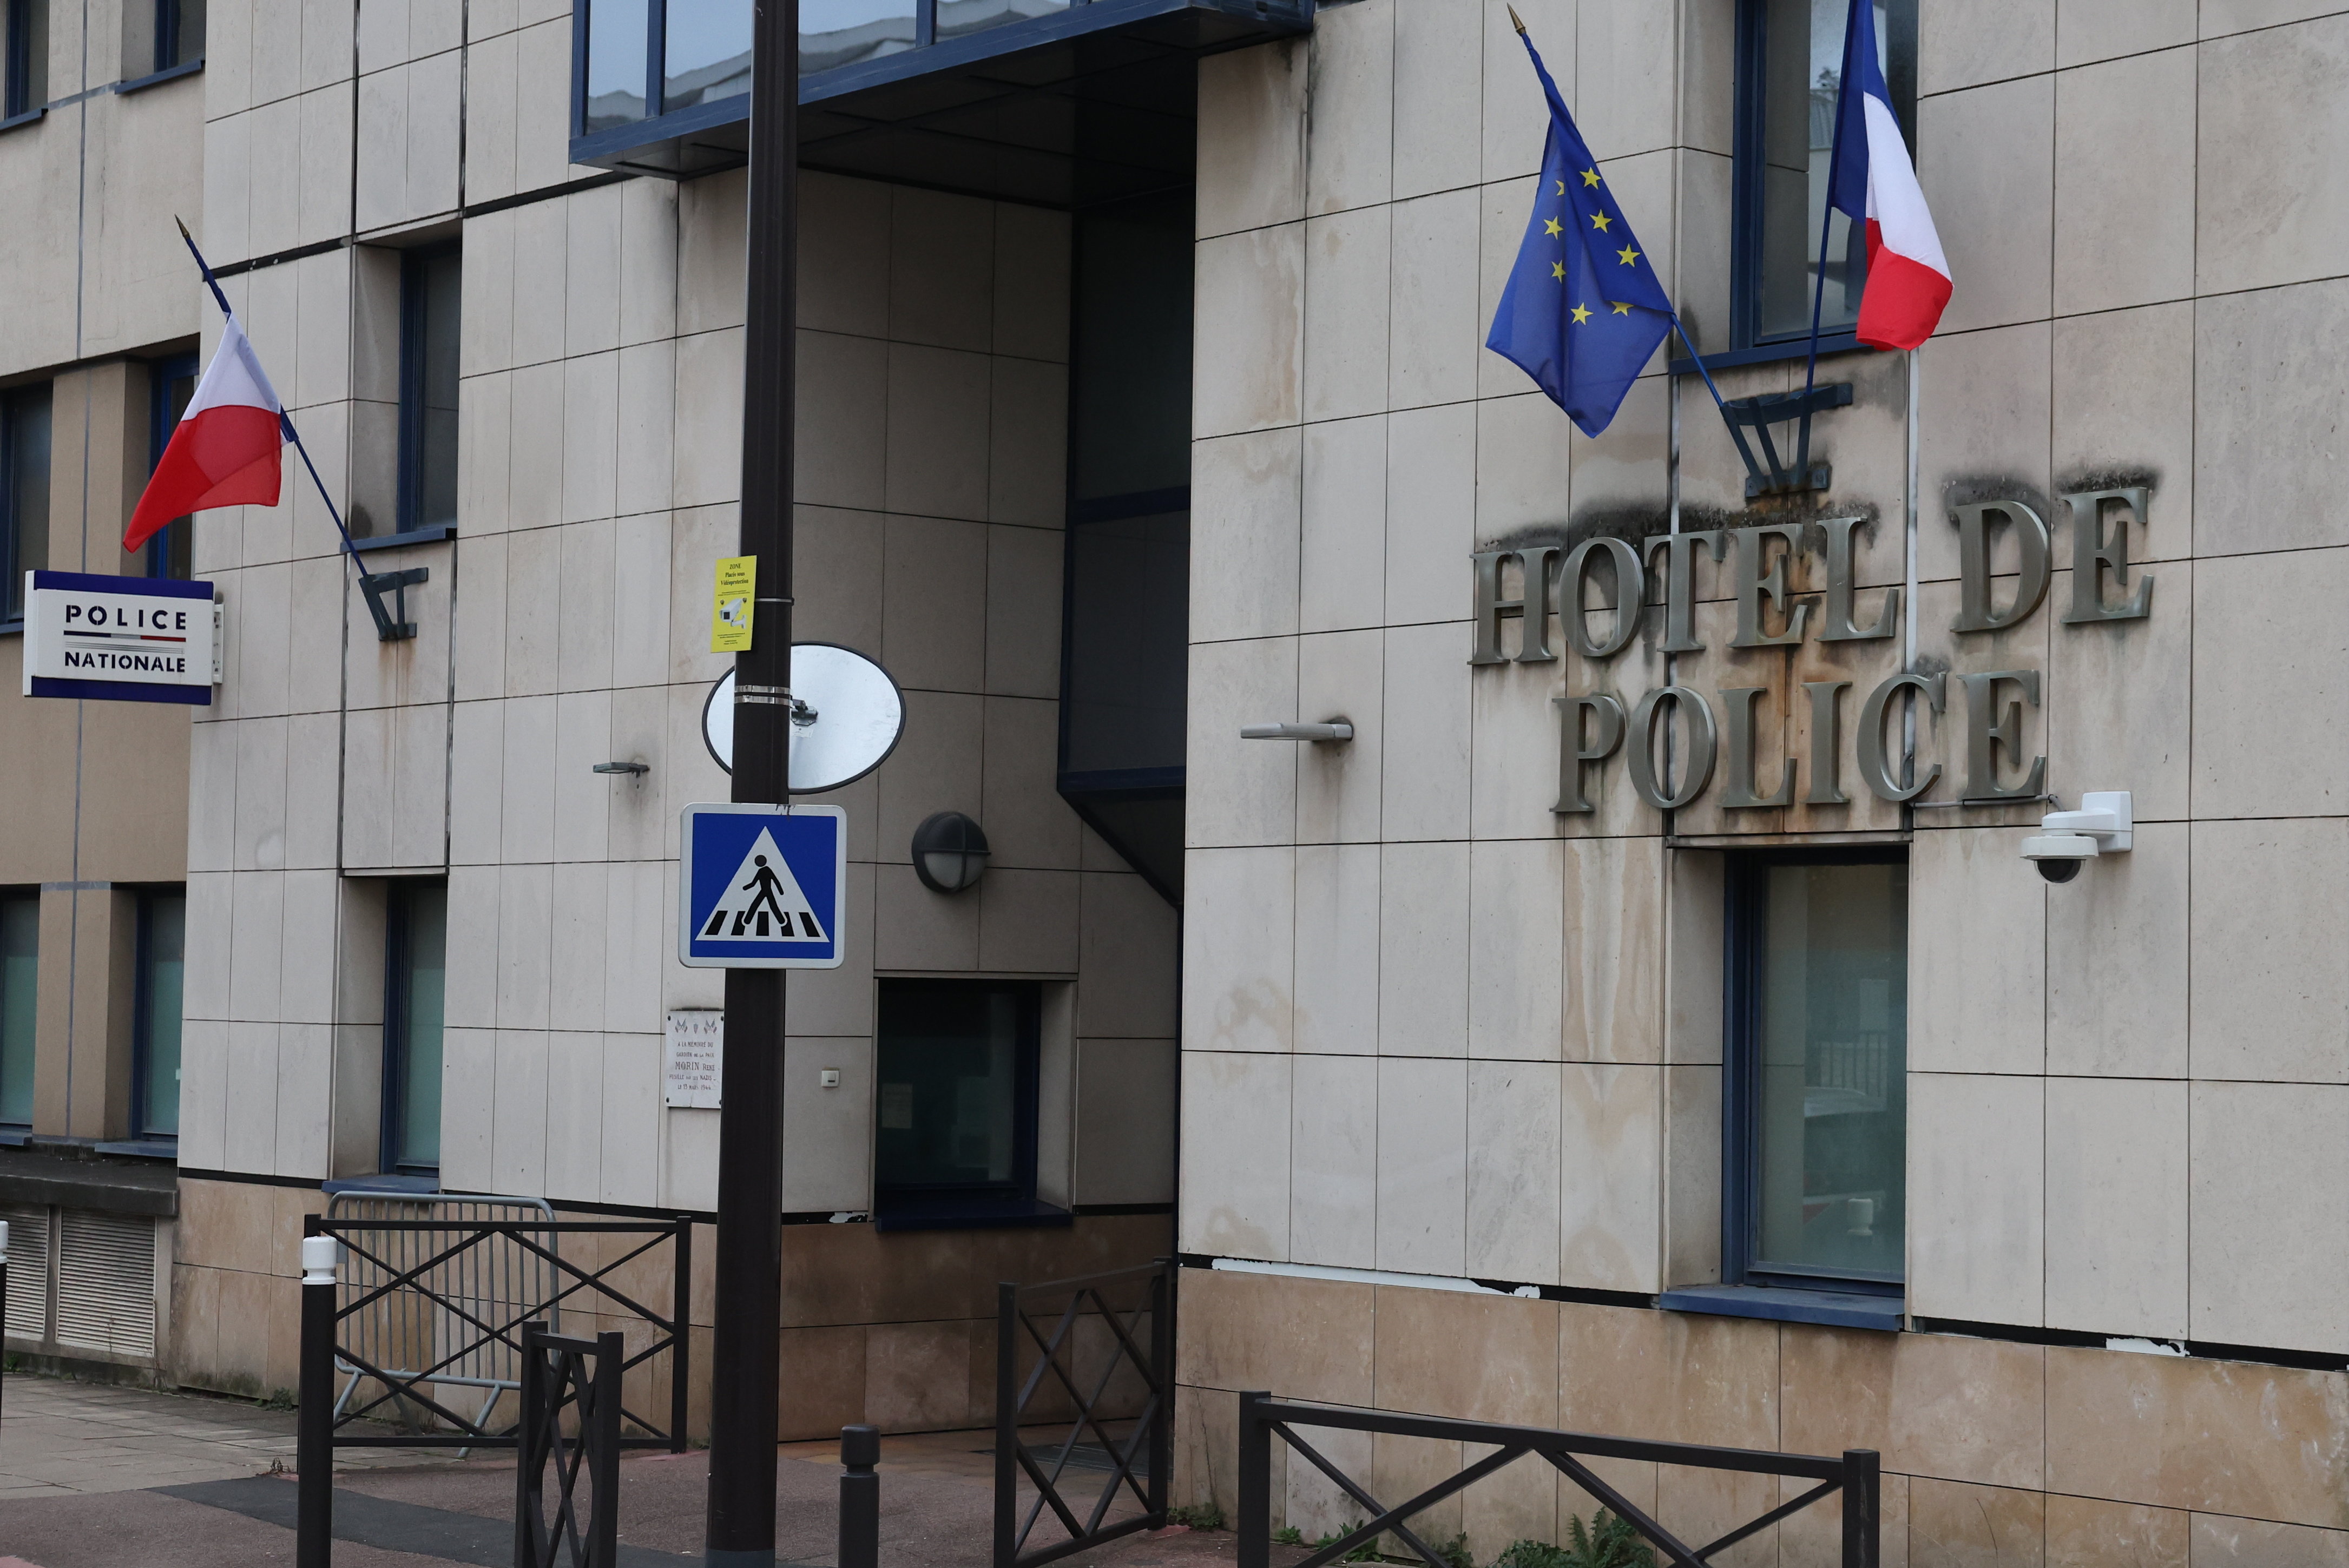 Un capitaine de police en poste au commissariat d’Antony (Hauts-de-Seine) dort désormais en prison et risque la Cour d’assises. LP/Arnaud Journois